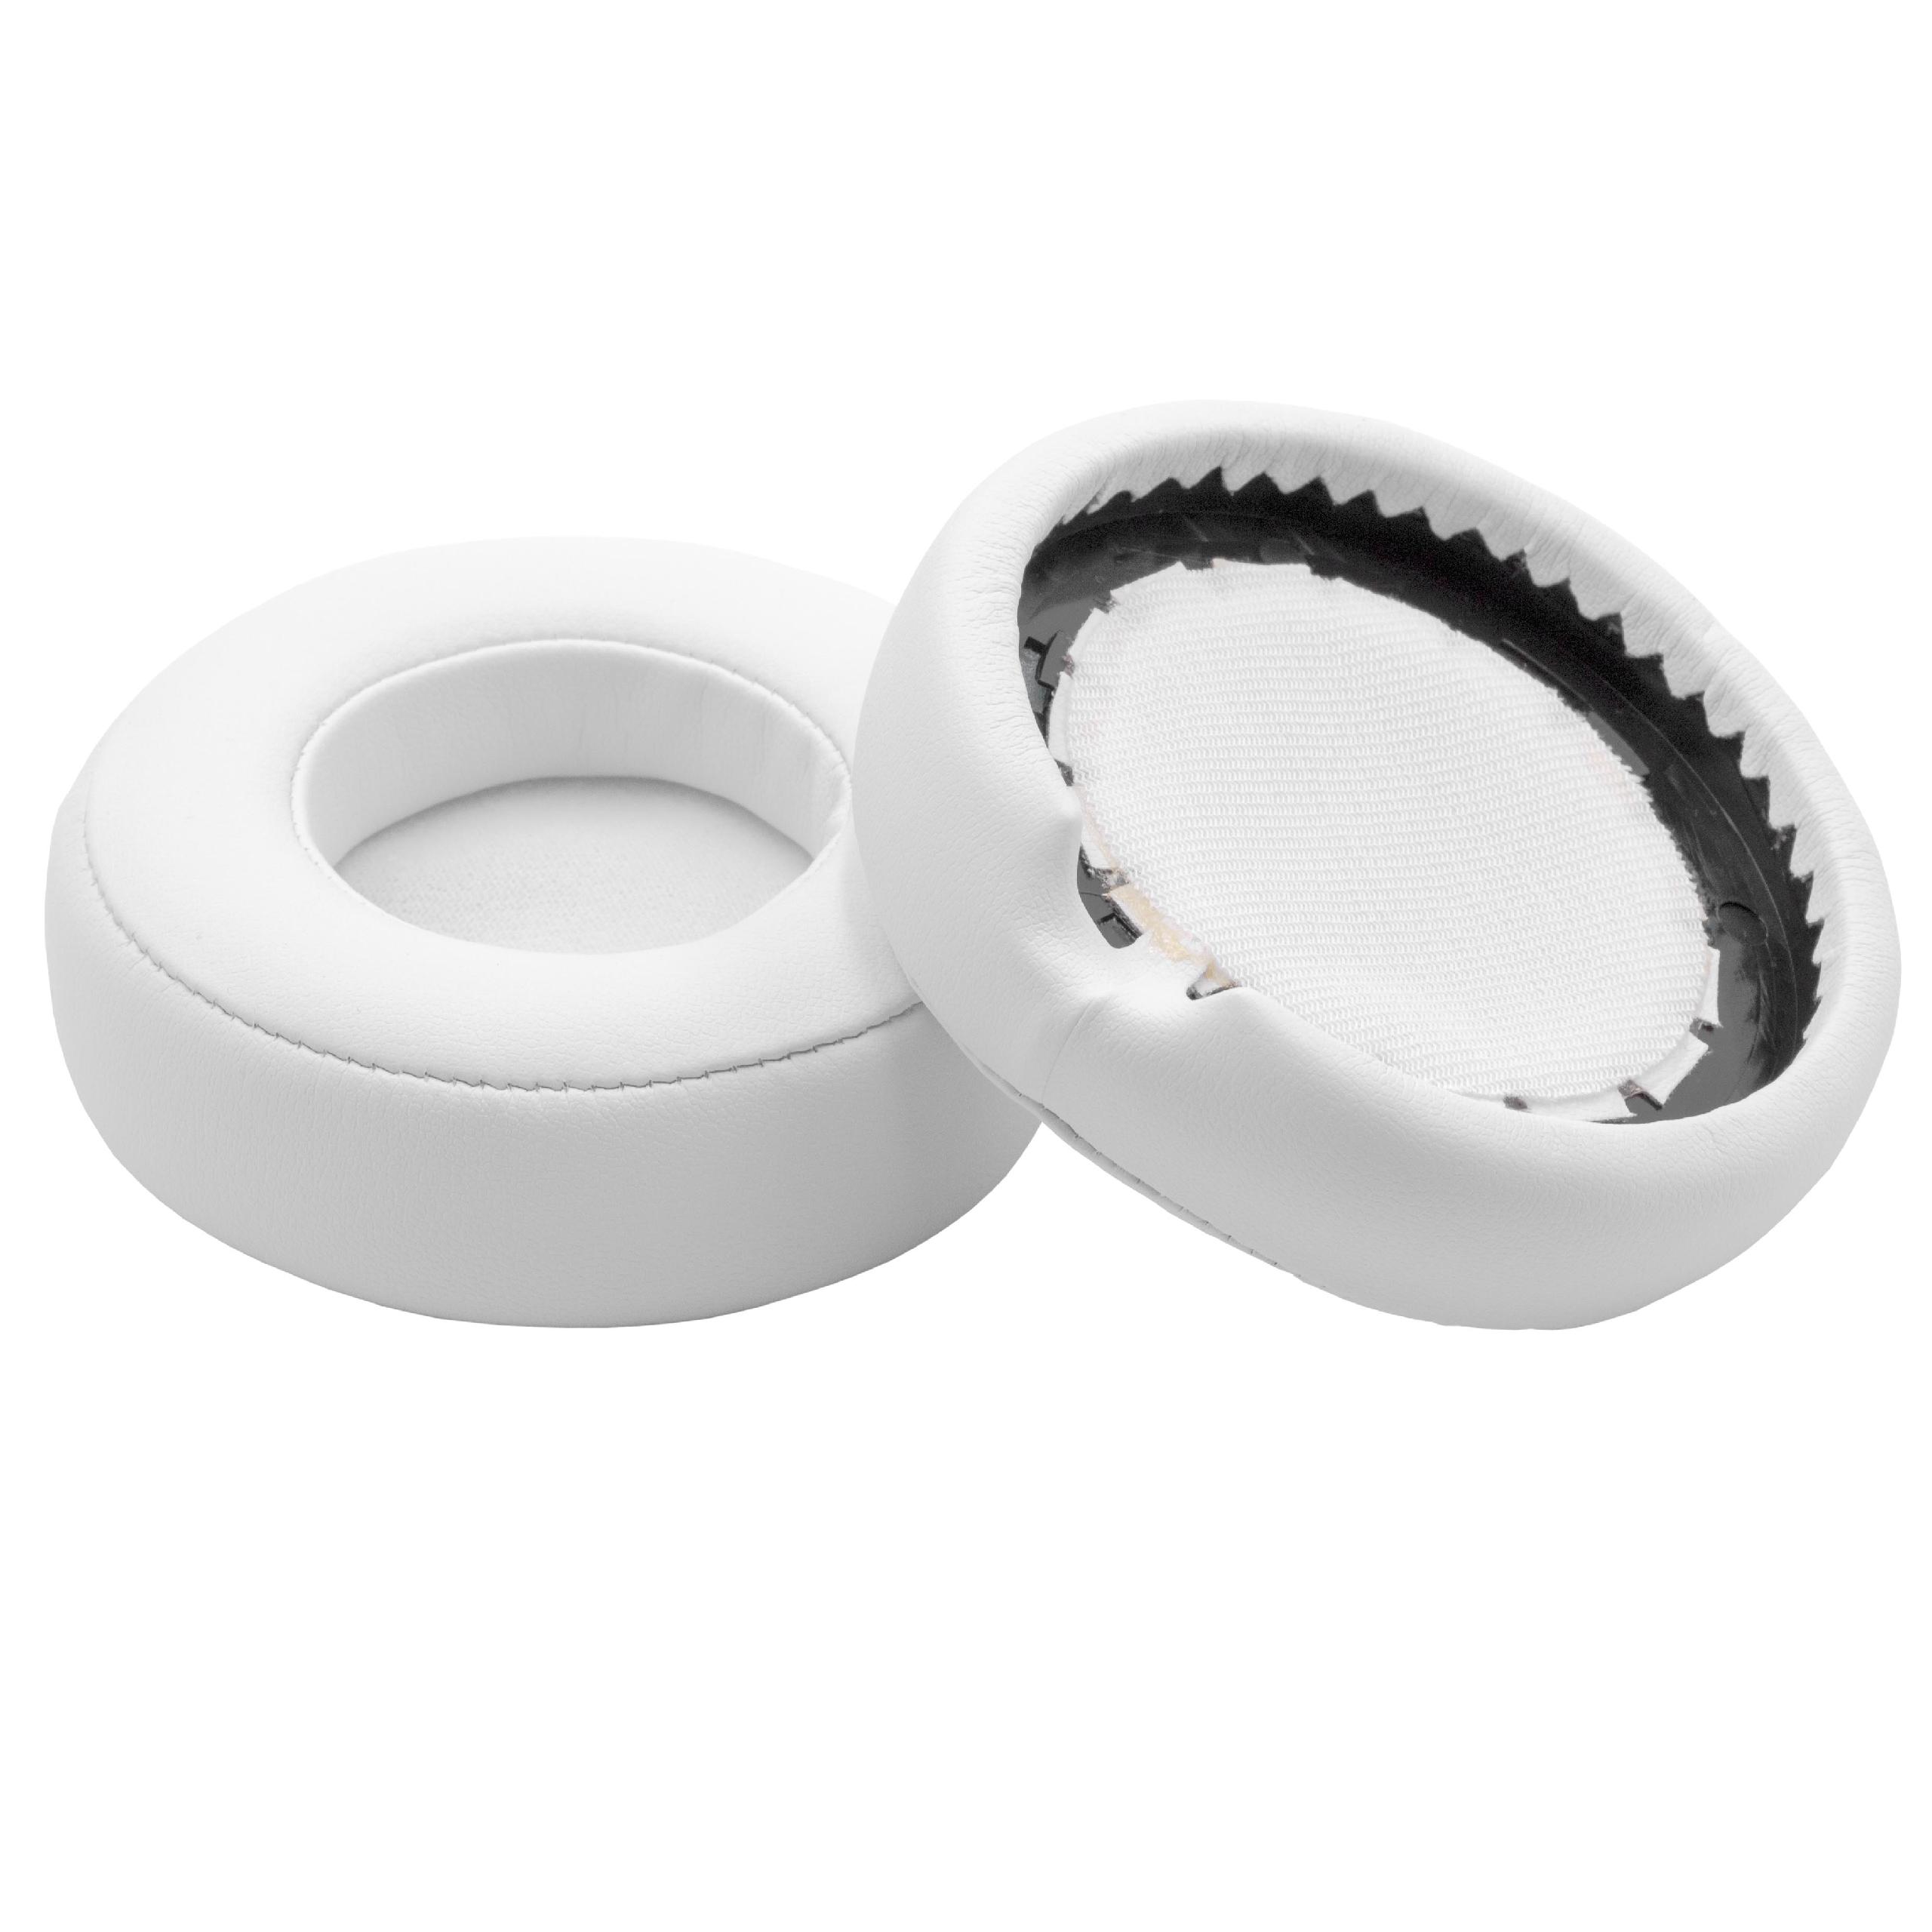 Ear Pads suitable for Beats Monster by Dr. Dre Headphones etc. - polyurethane / foam, 8.5 cm External Diameter